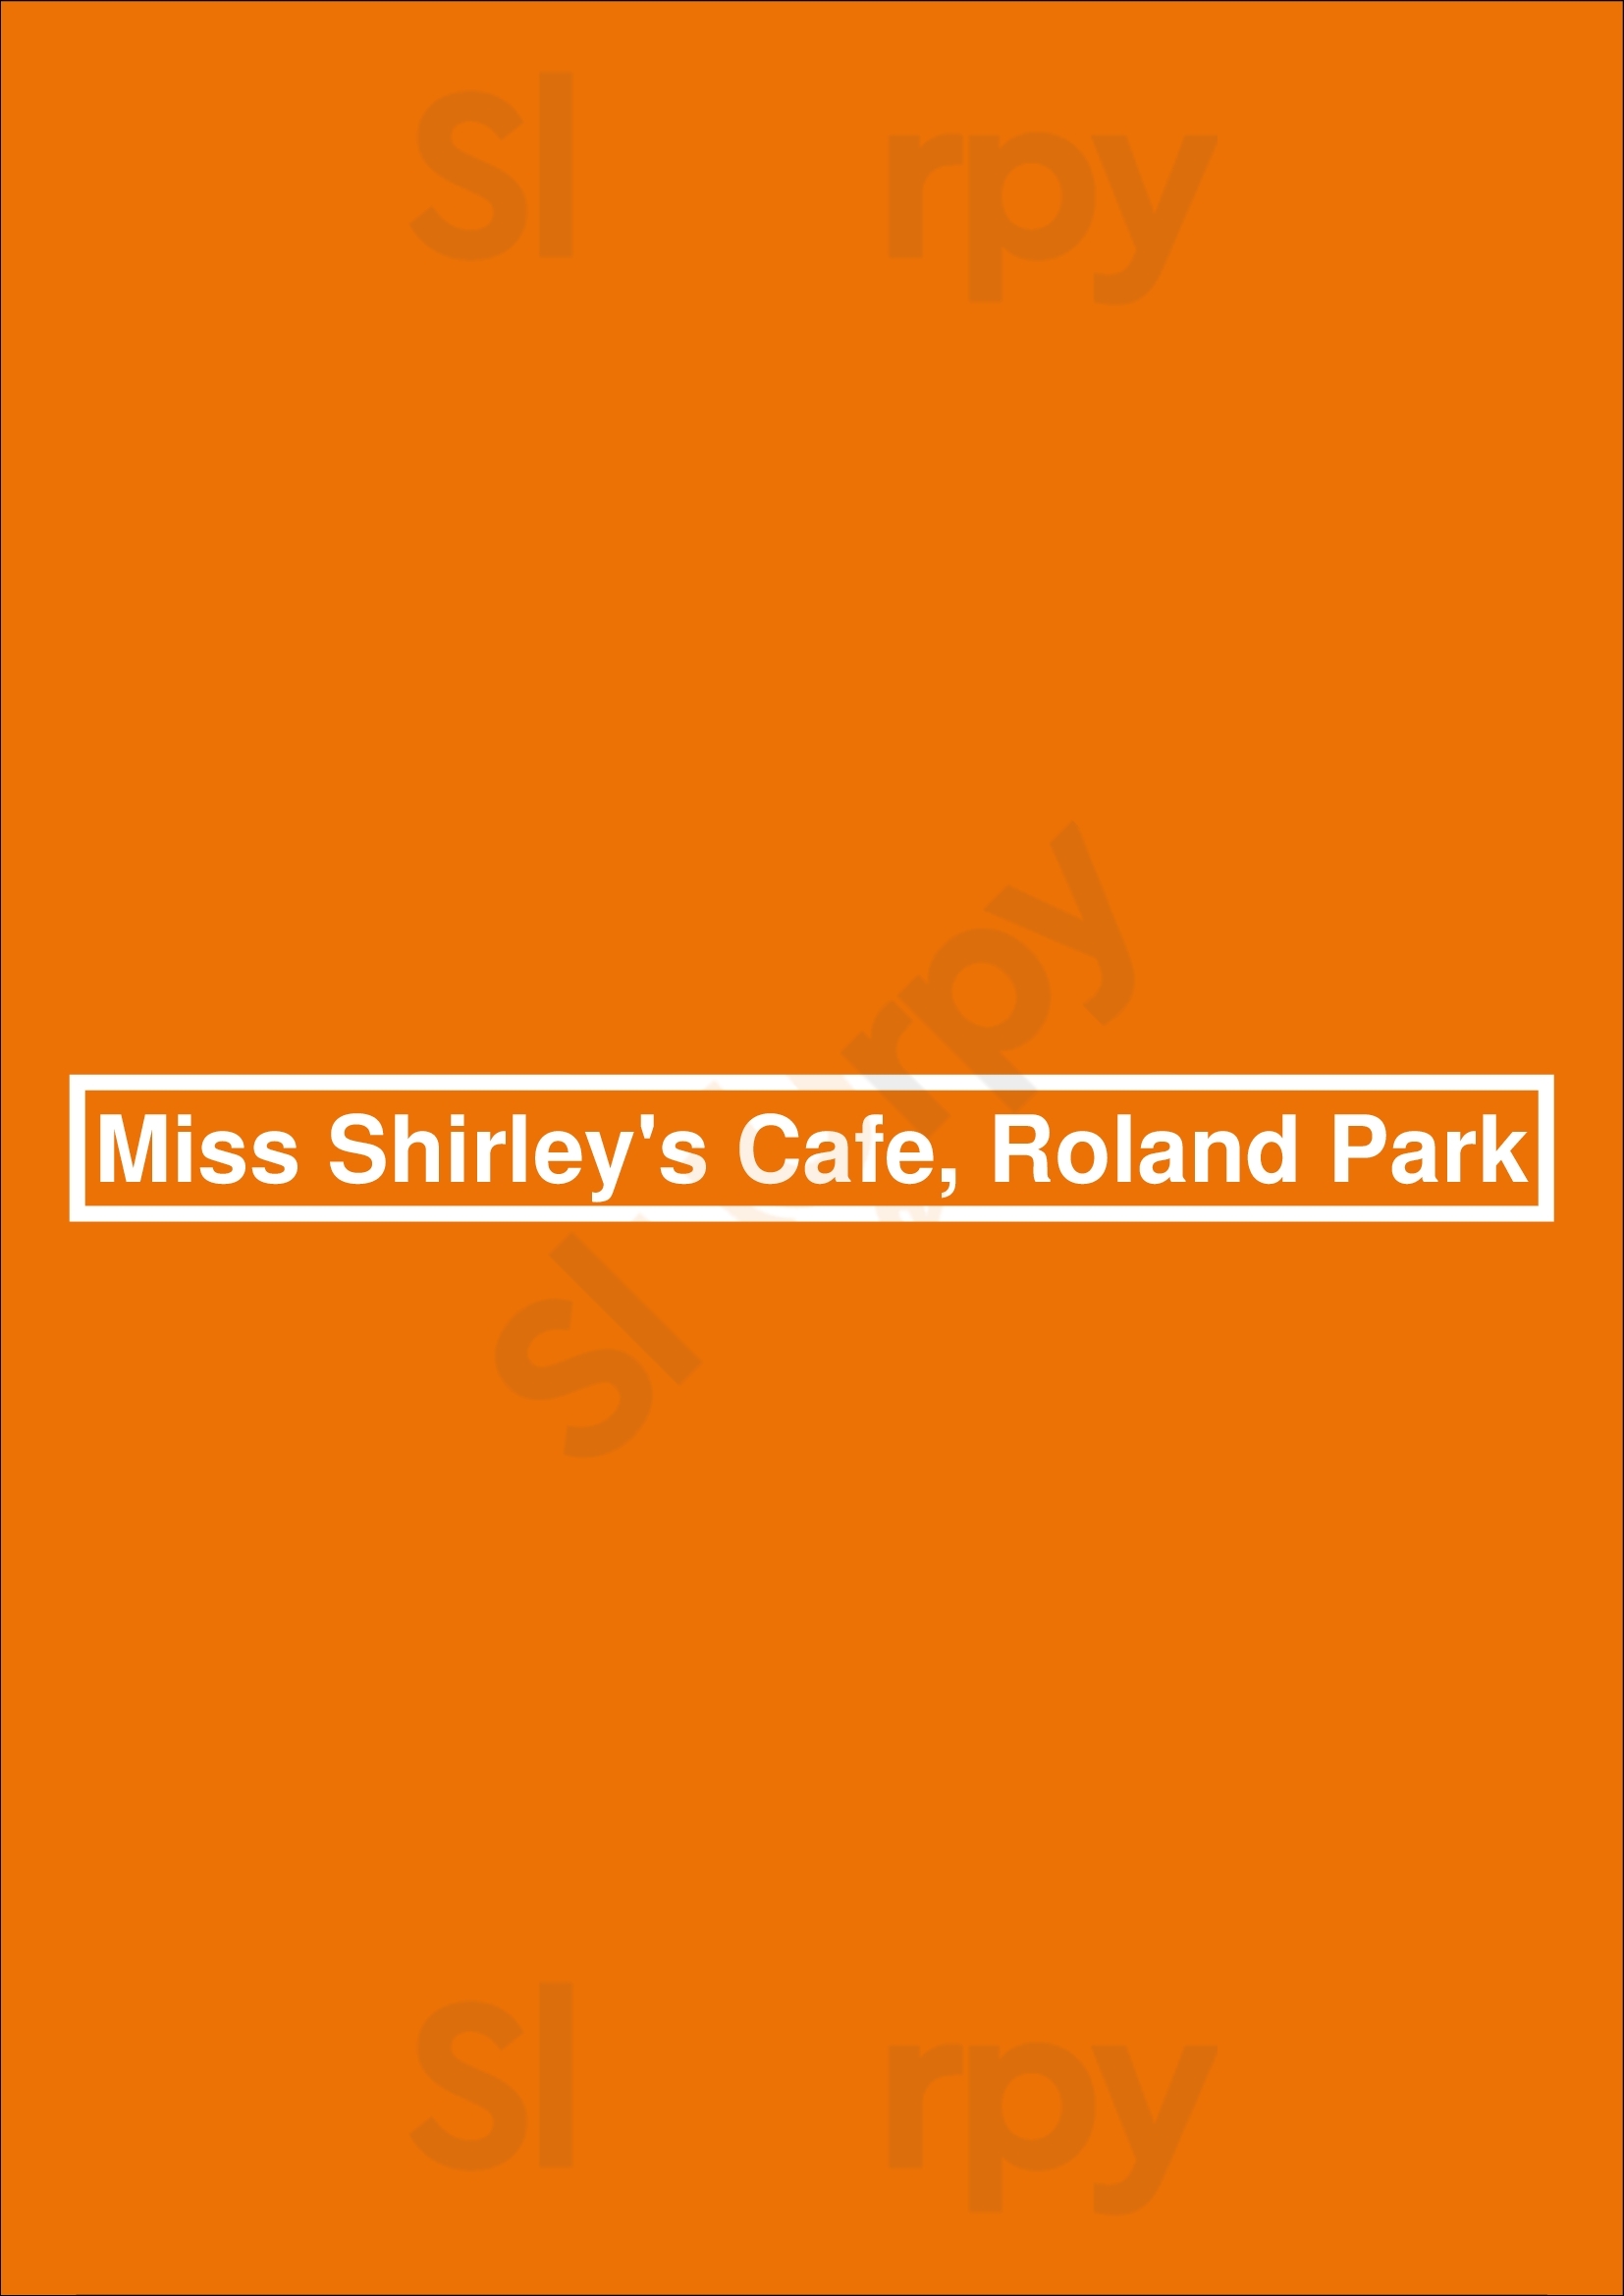 Miss Shirley's Cafe, Roland Park Baltimore Menu - 1